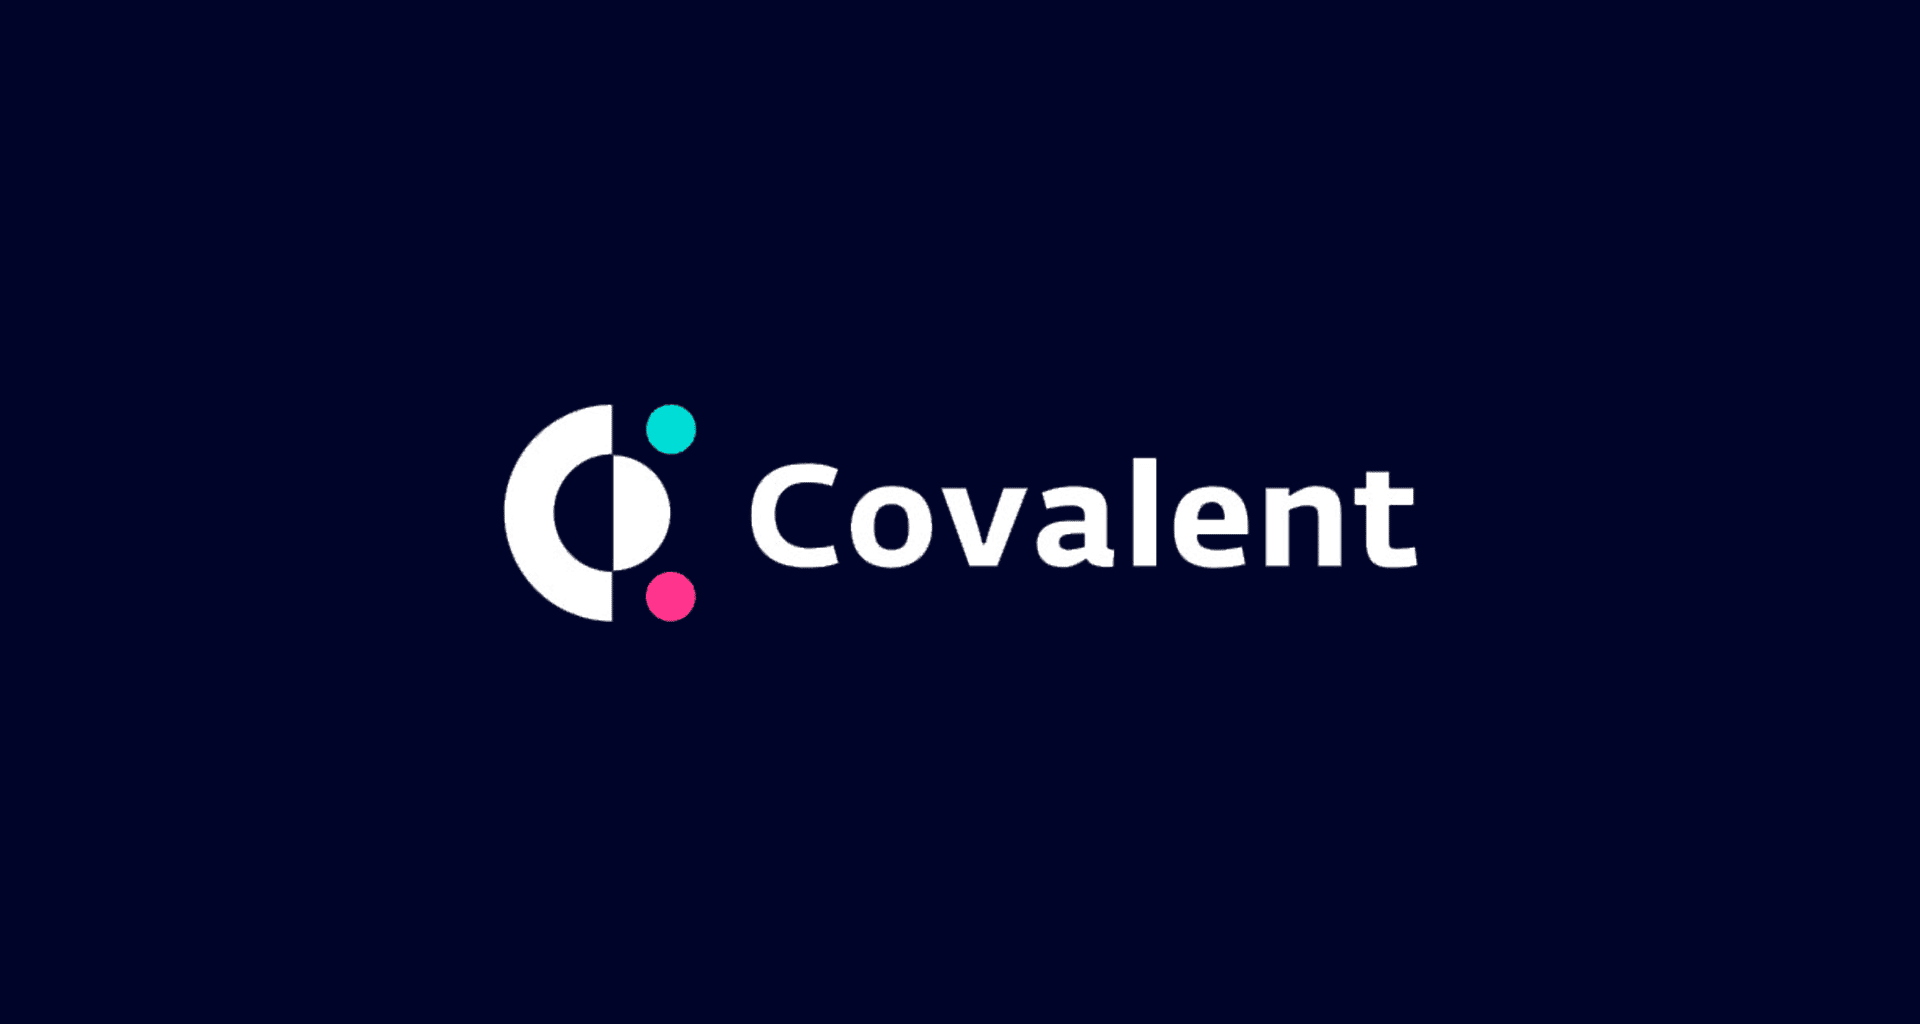 logo covalent cqt